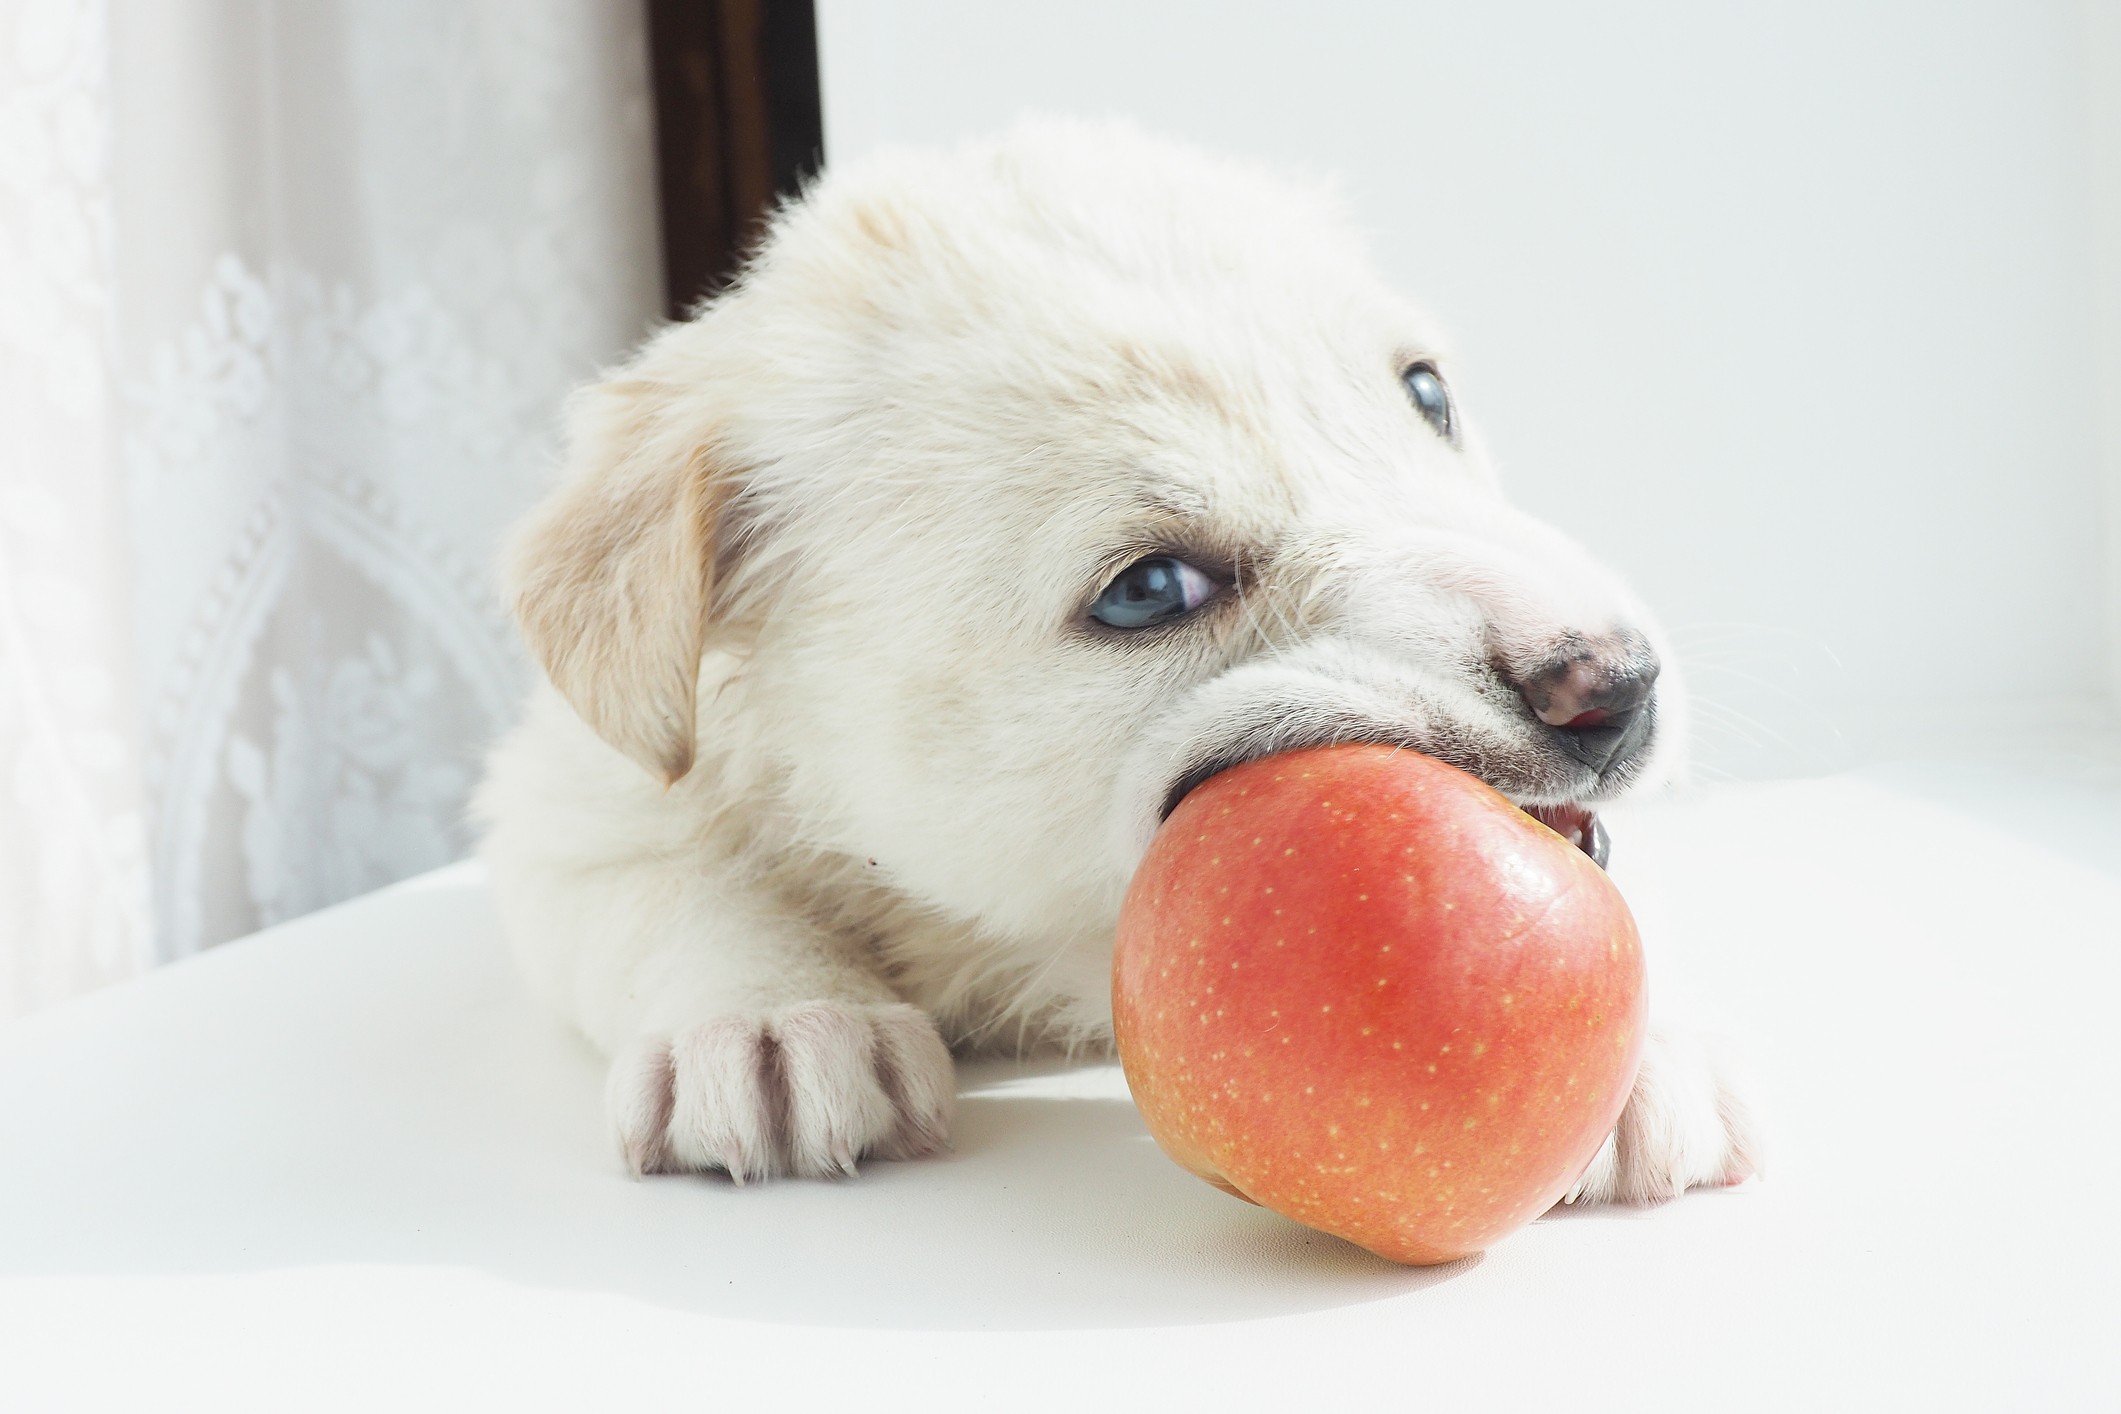 Balancear a oferta de ração seca com a alimentação natural traz diversos benefícios aos pets, além de tornar as refeições mais saborosas (Foto: Getty Images)